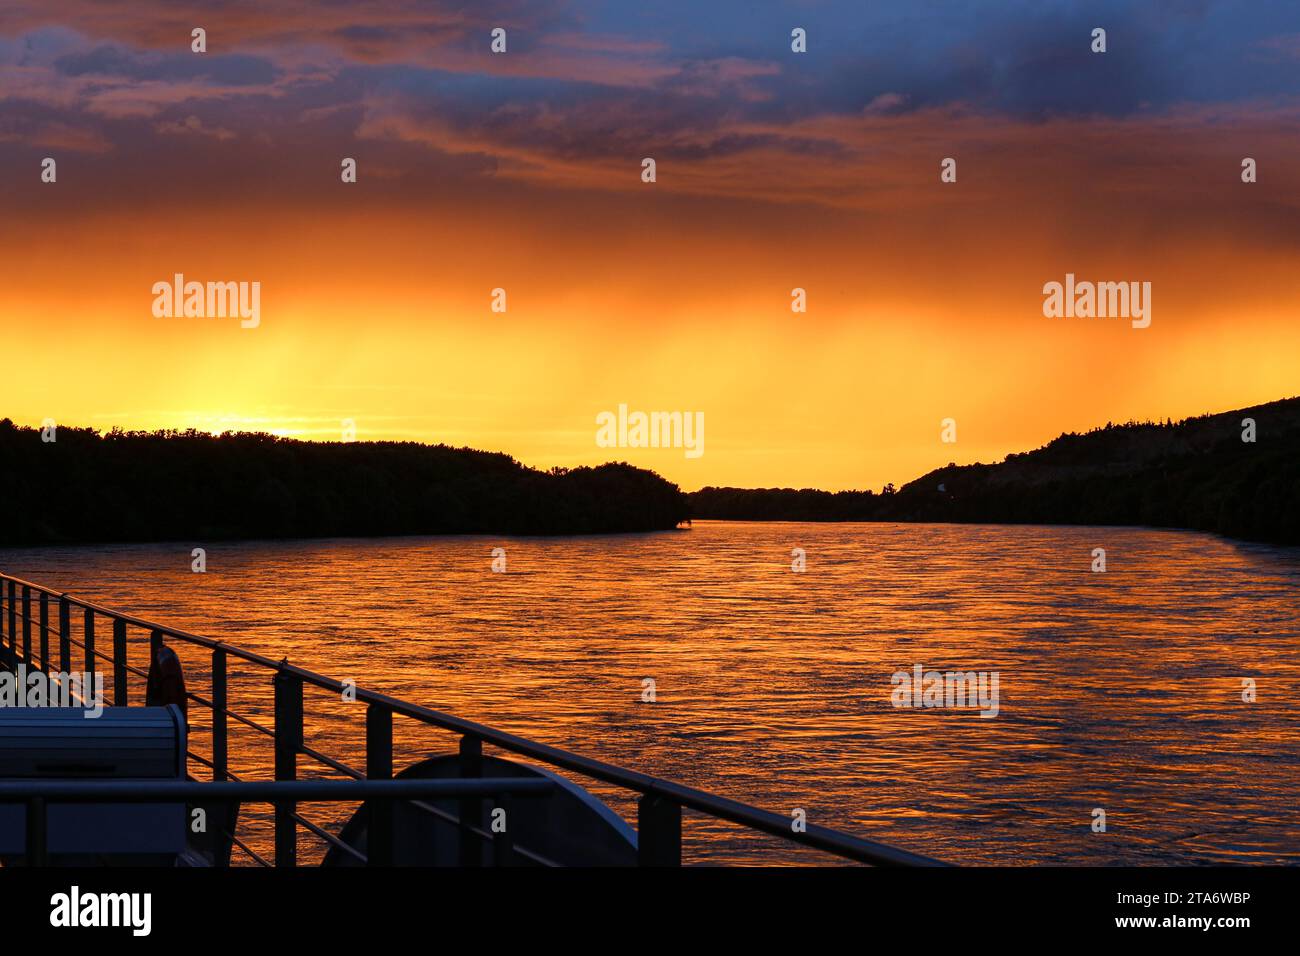 Magnifico tramonto sul Danubio visto da una nave da crociera sul fiume vicino a Vukovar, regione orientale della Slavonia, al confine tra Croazia (a sinistra) e Serbia (a destra) Foto Stock